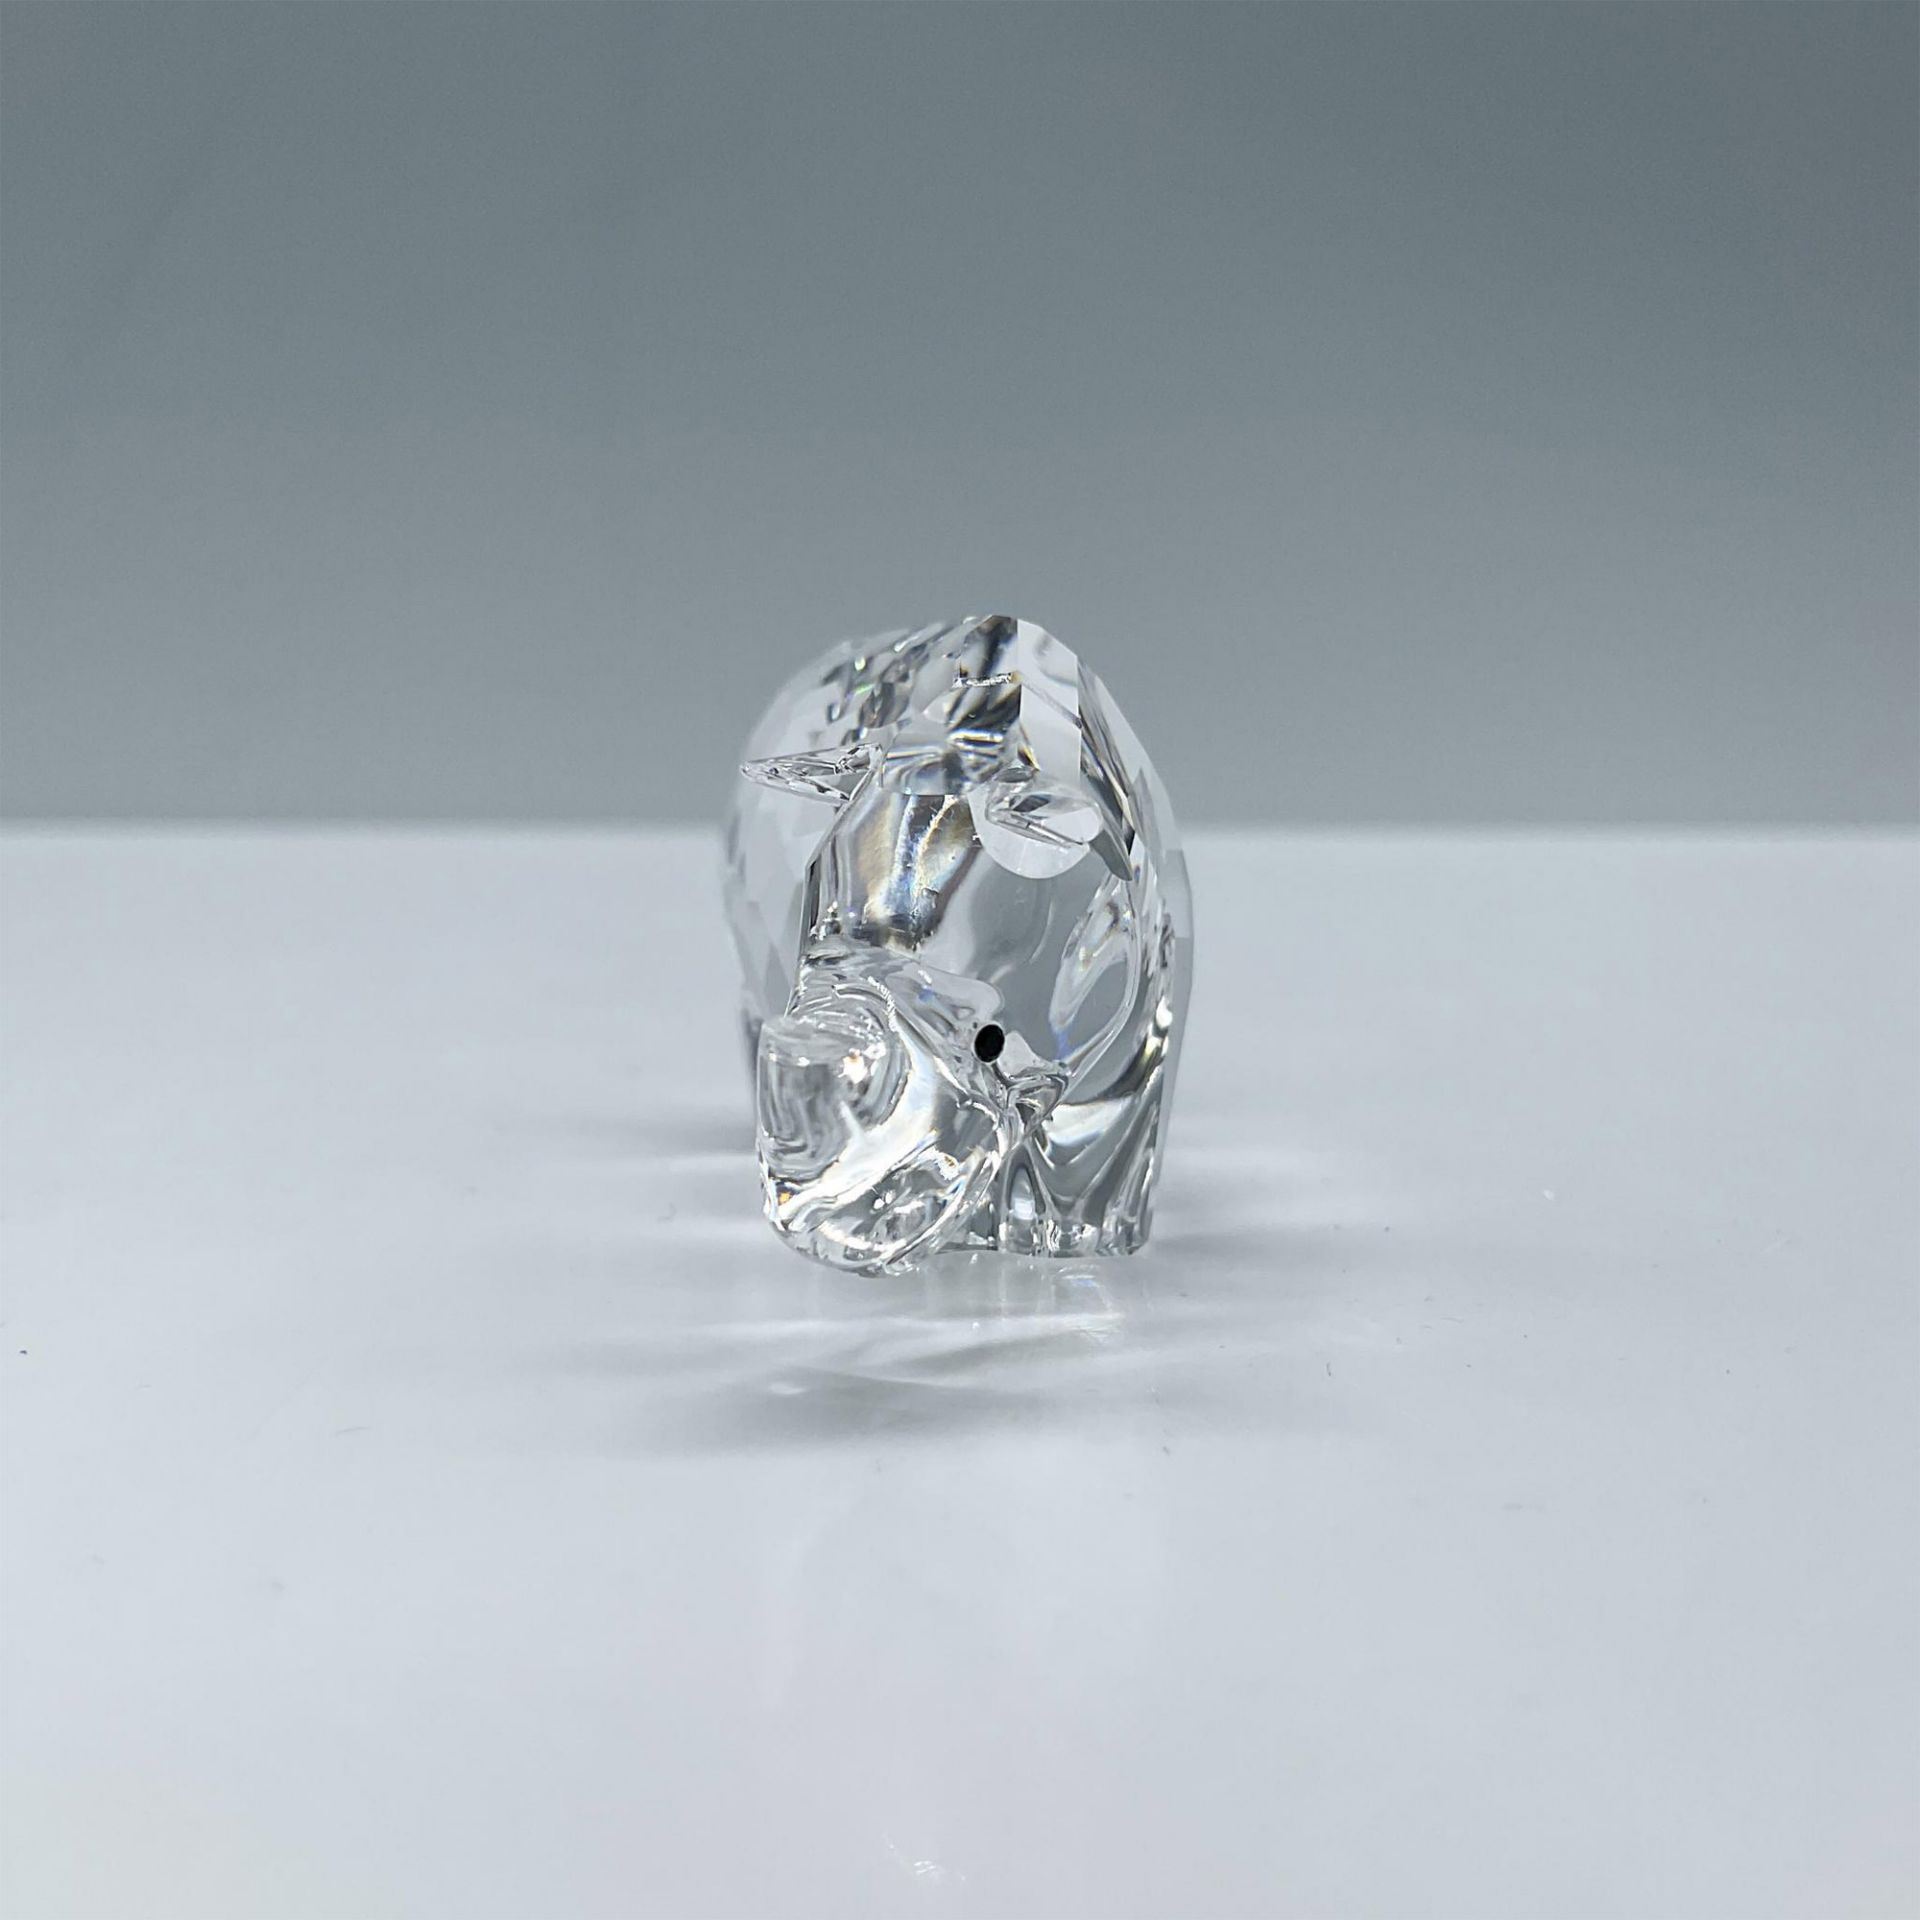 Swarovski Crystal Figurine, Zodiac Rhinoceros - Image 3 of 5